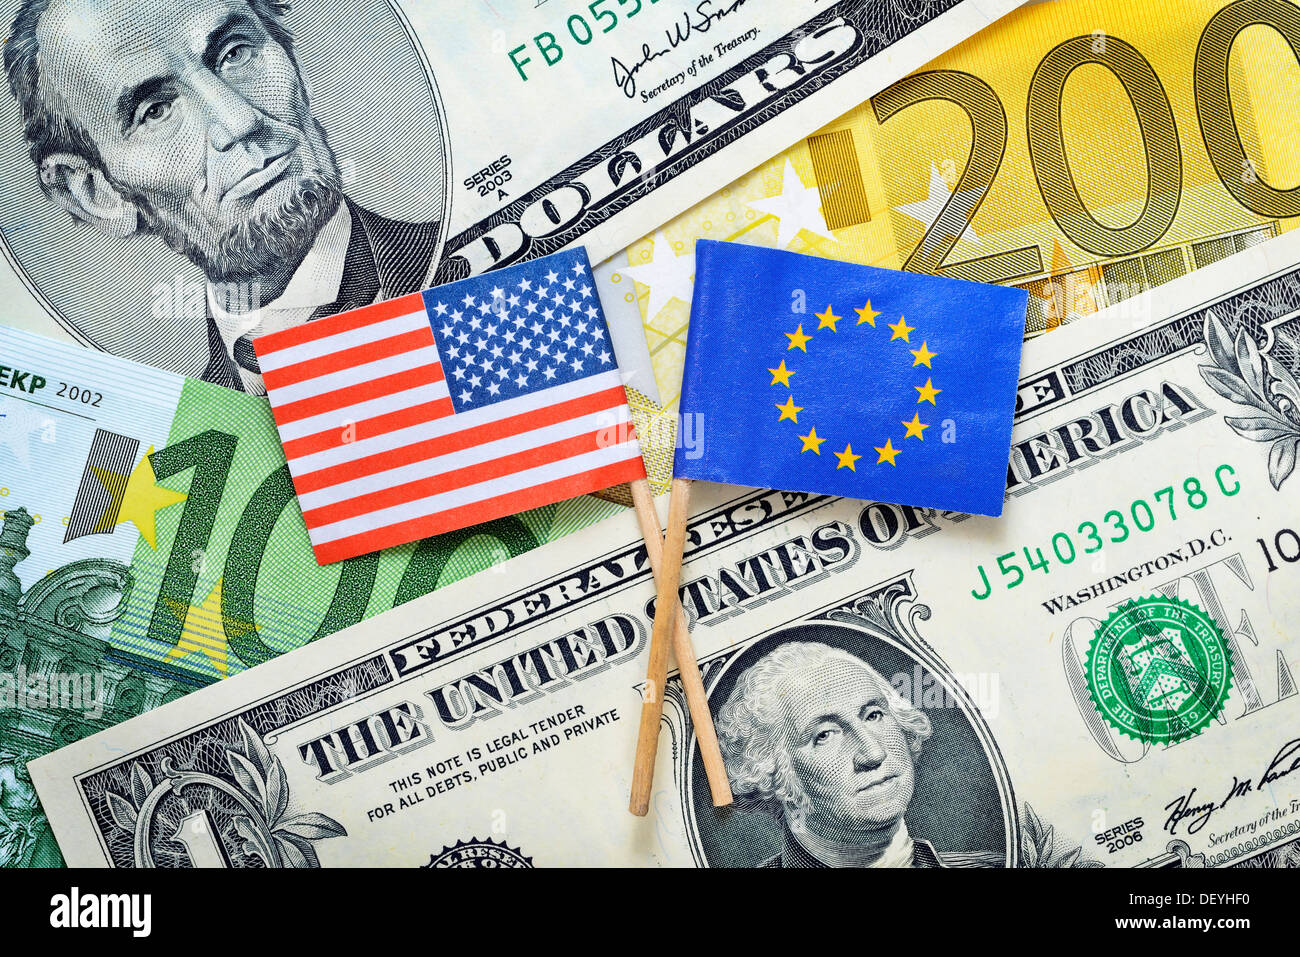 Pavillon des USA et l'UE sur les marques dollar et euronotes photo symbolique, zone de commerce extérieur entre les USA et l'UE Banque D'Images